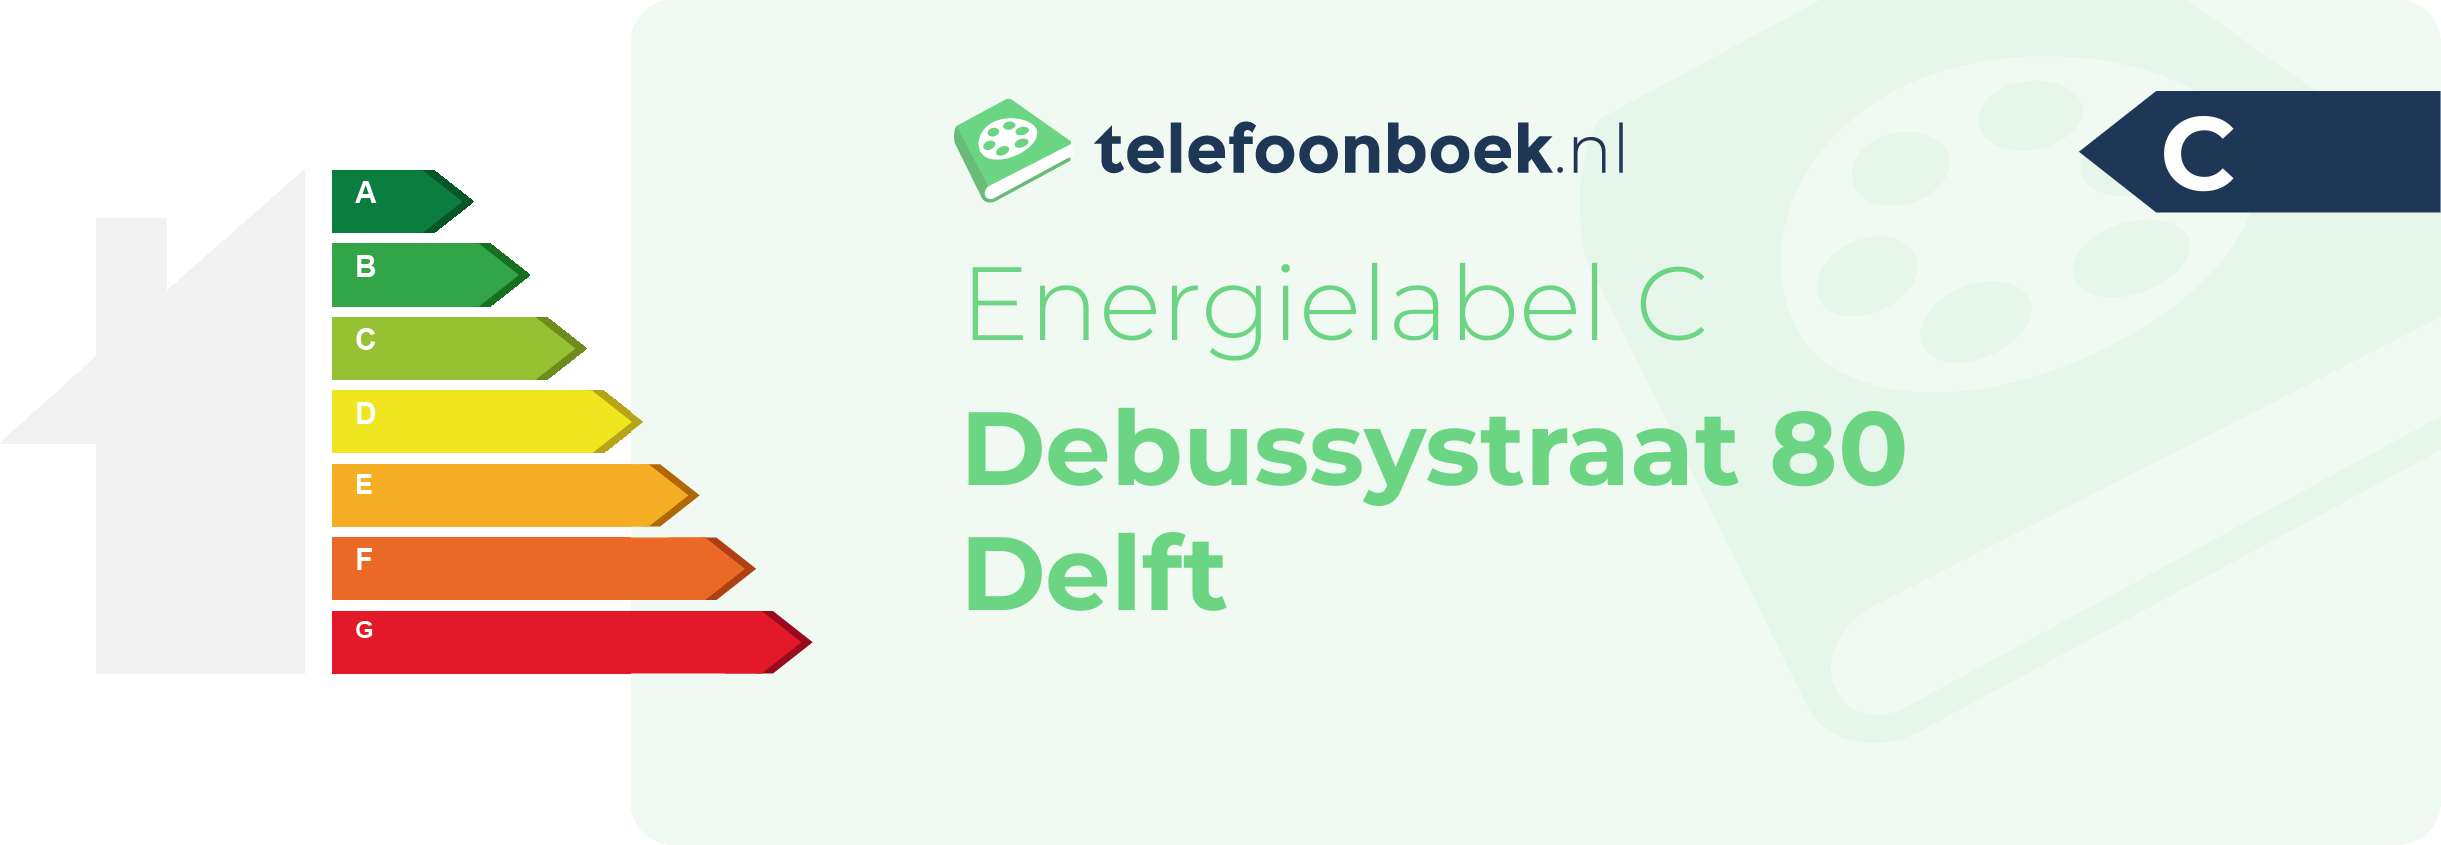 Energielabel Debussystraat 80 Delft